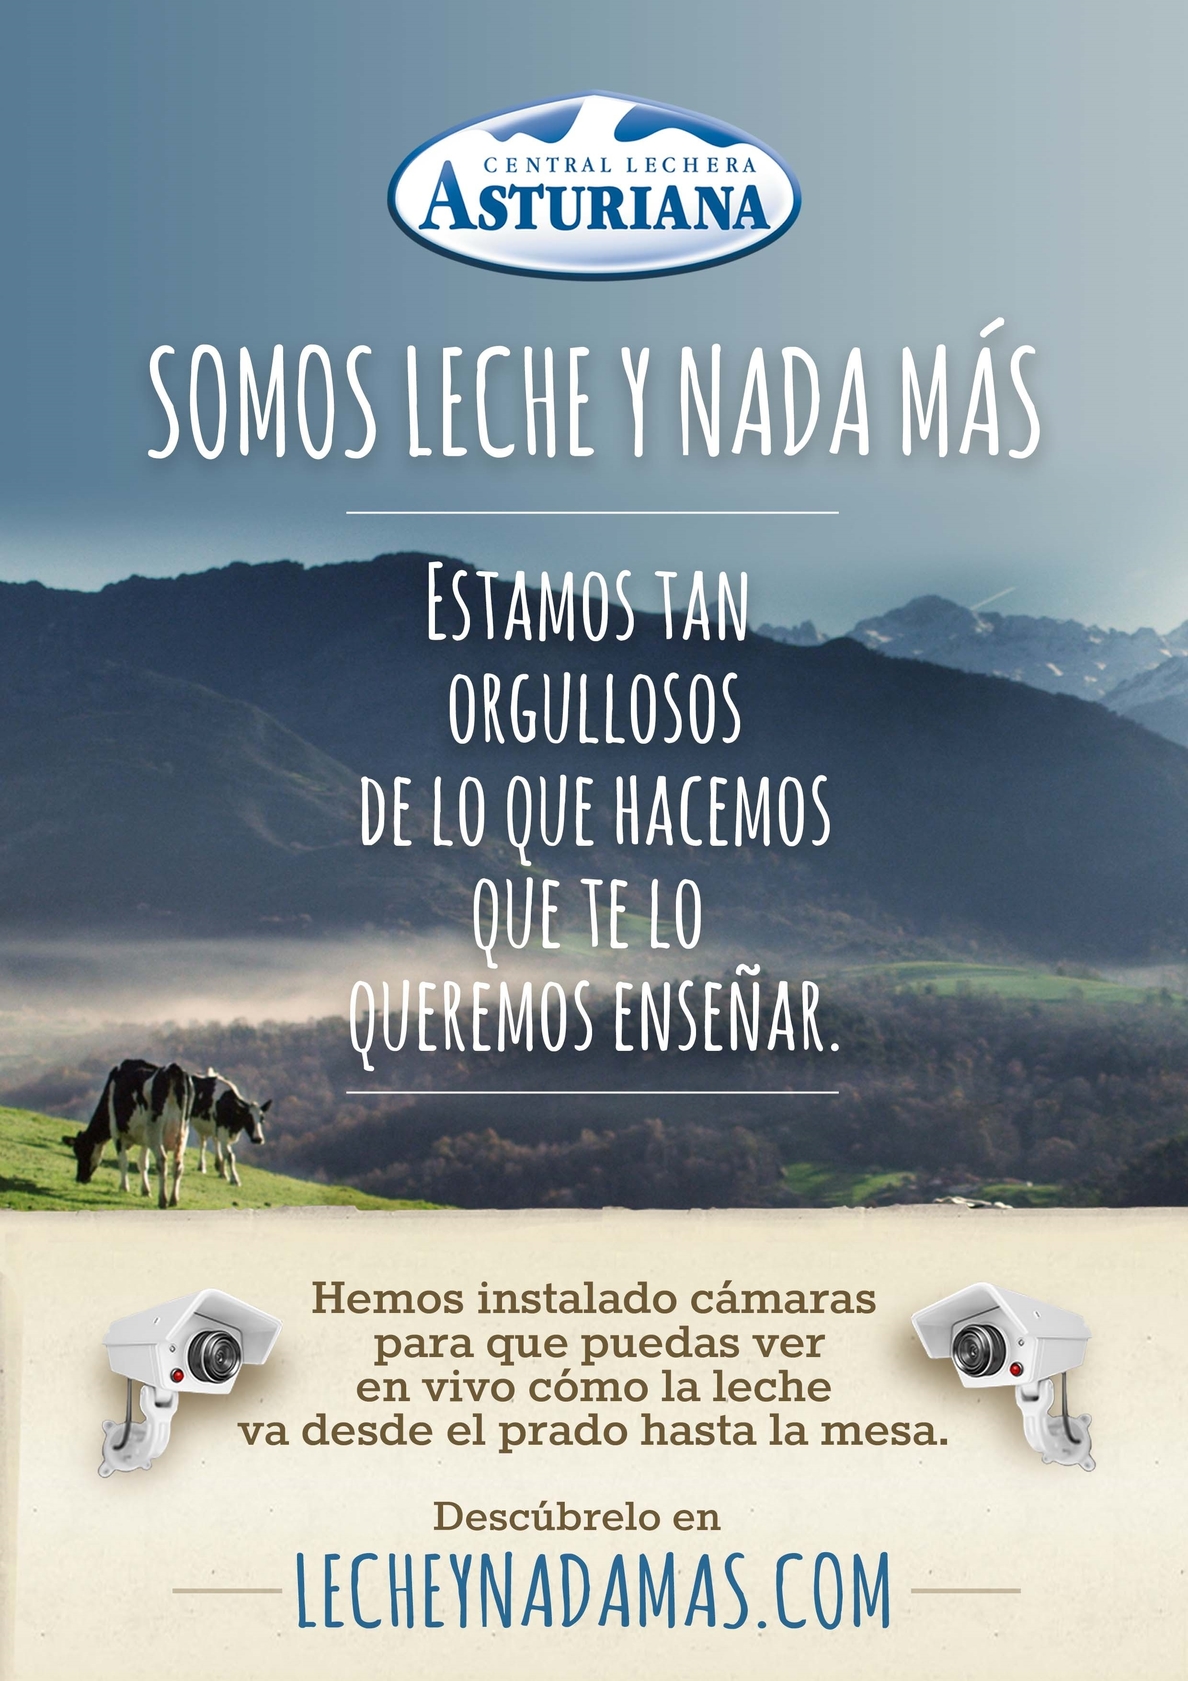 Central Lechera Asturiana, Premio a la Eficacia en Comunicación Comercial